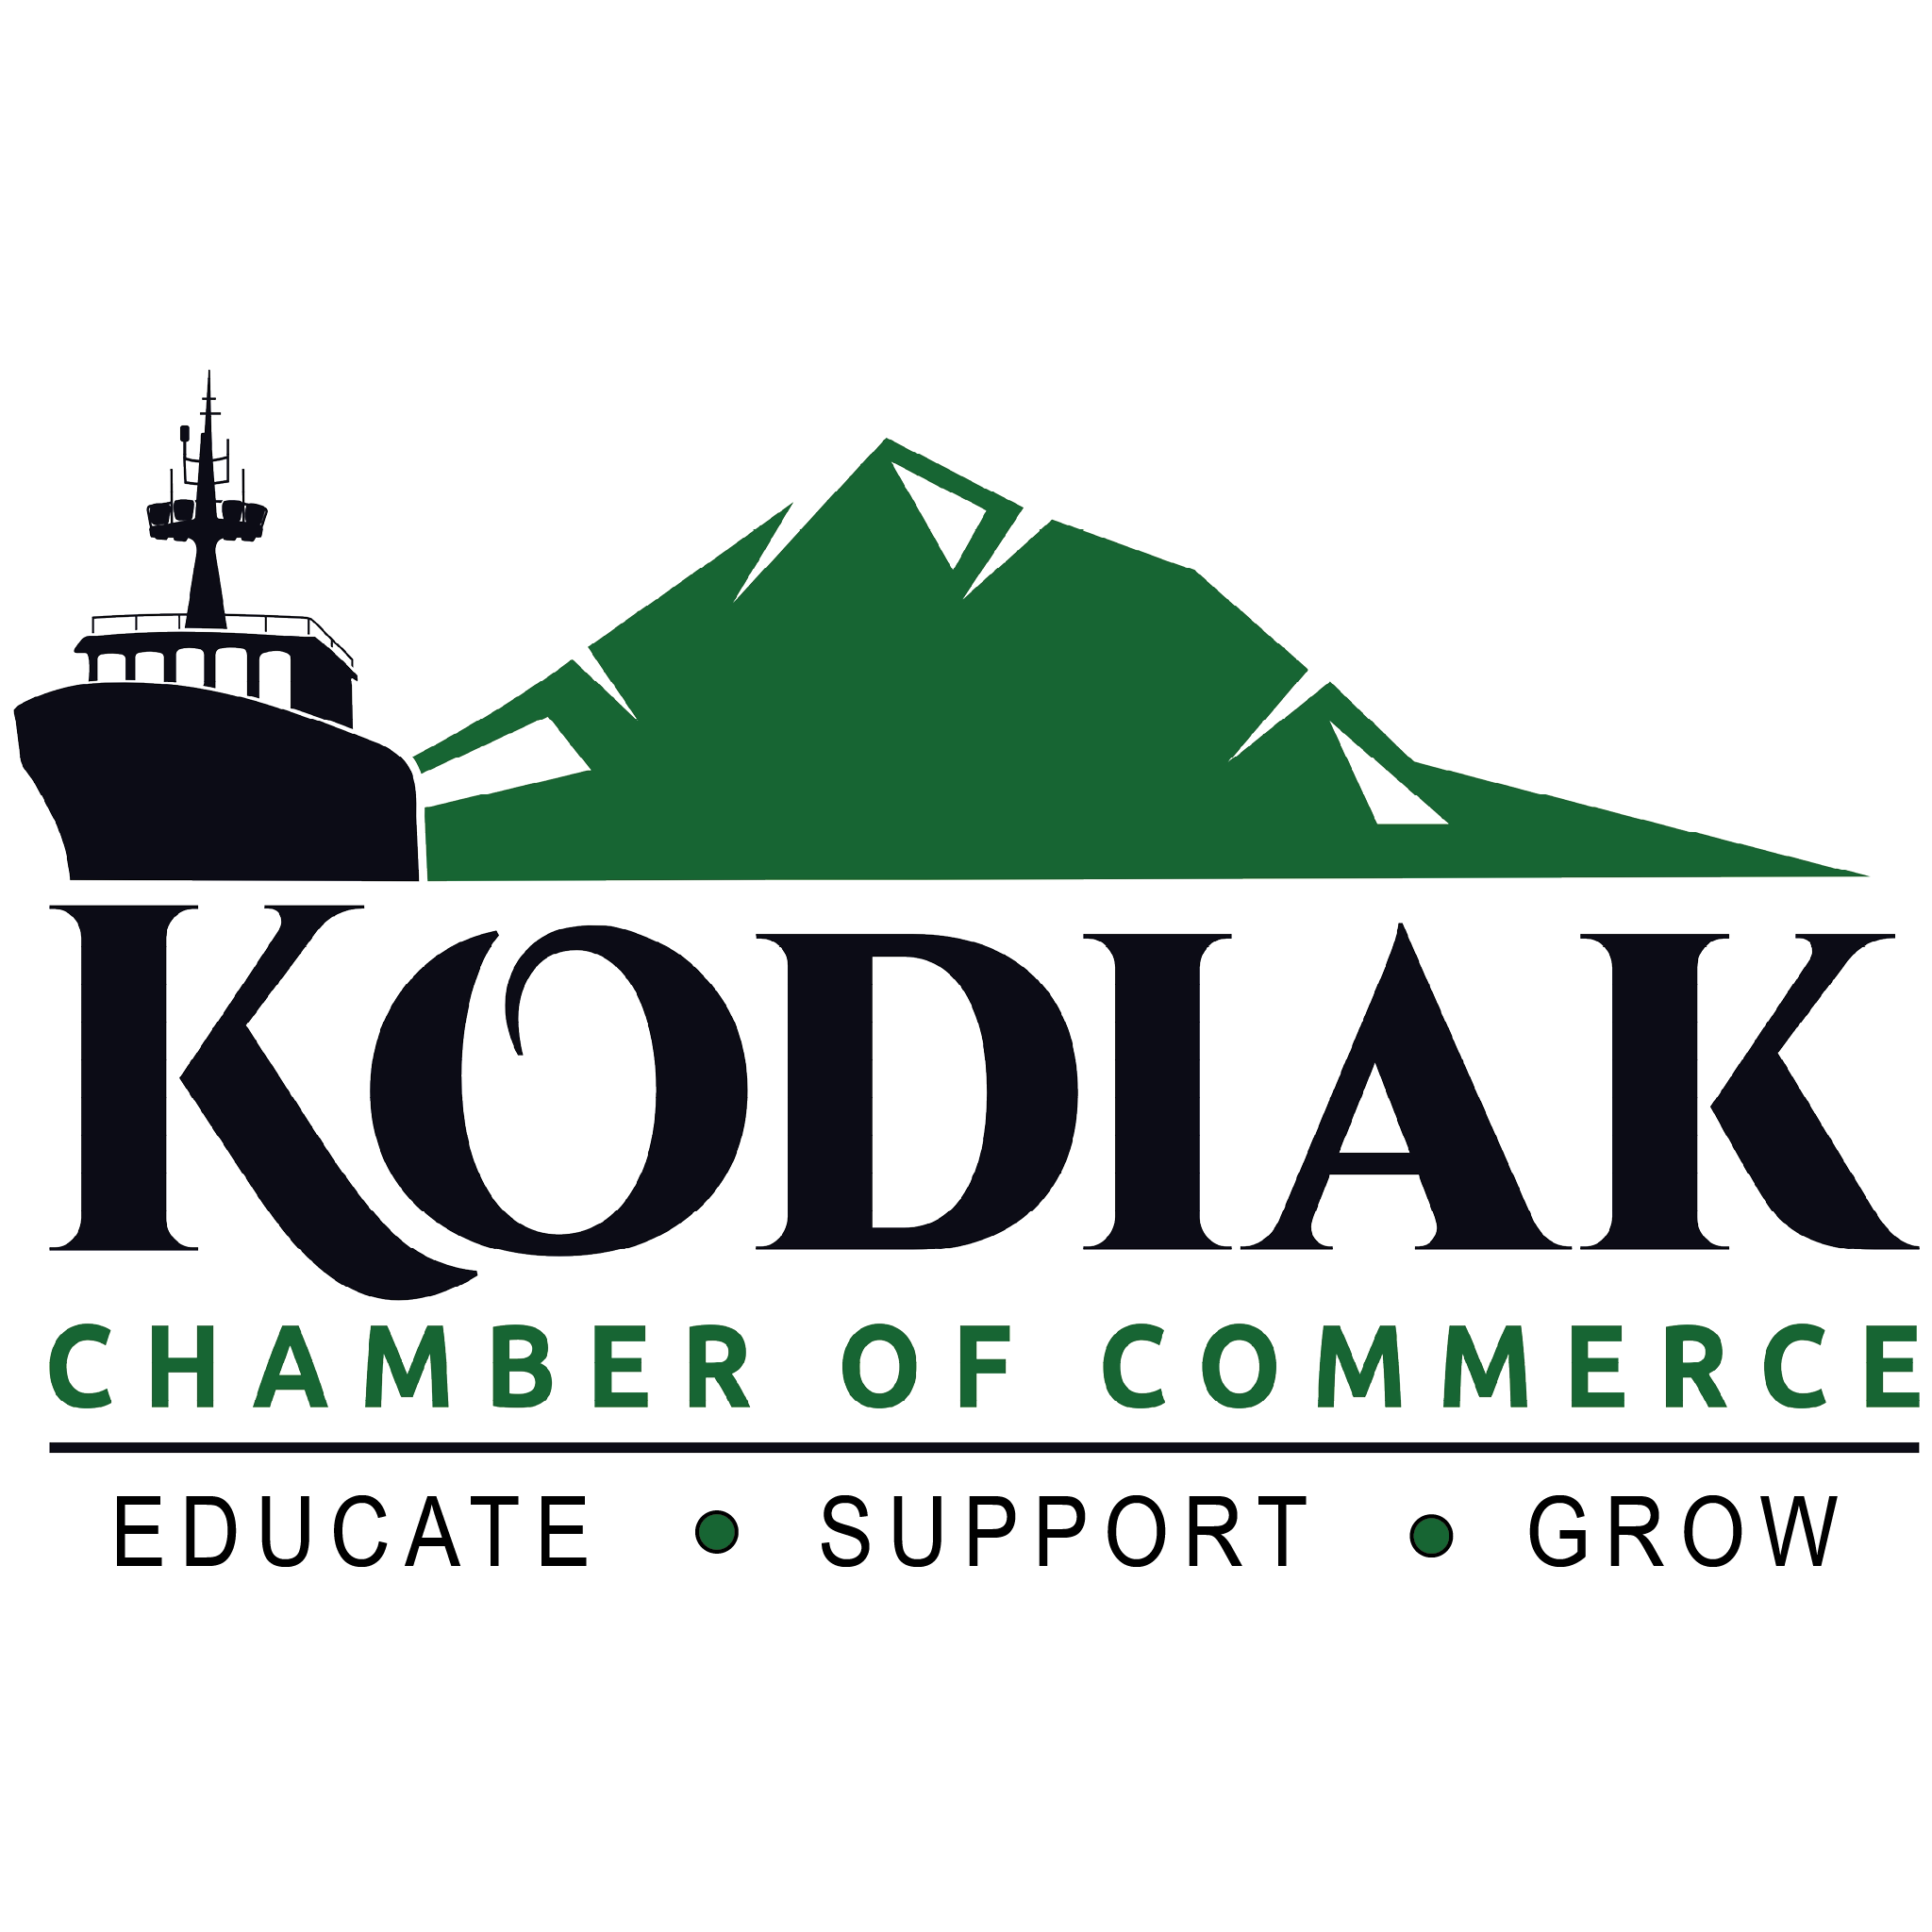 Kodiak Chamber of Commerce